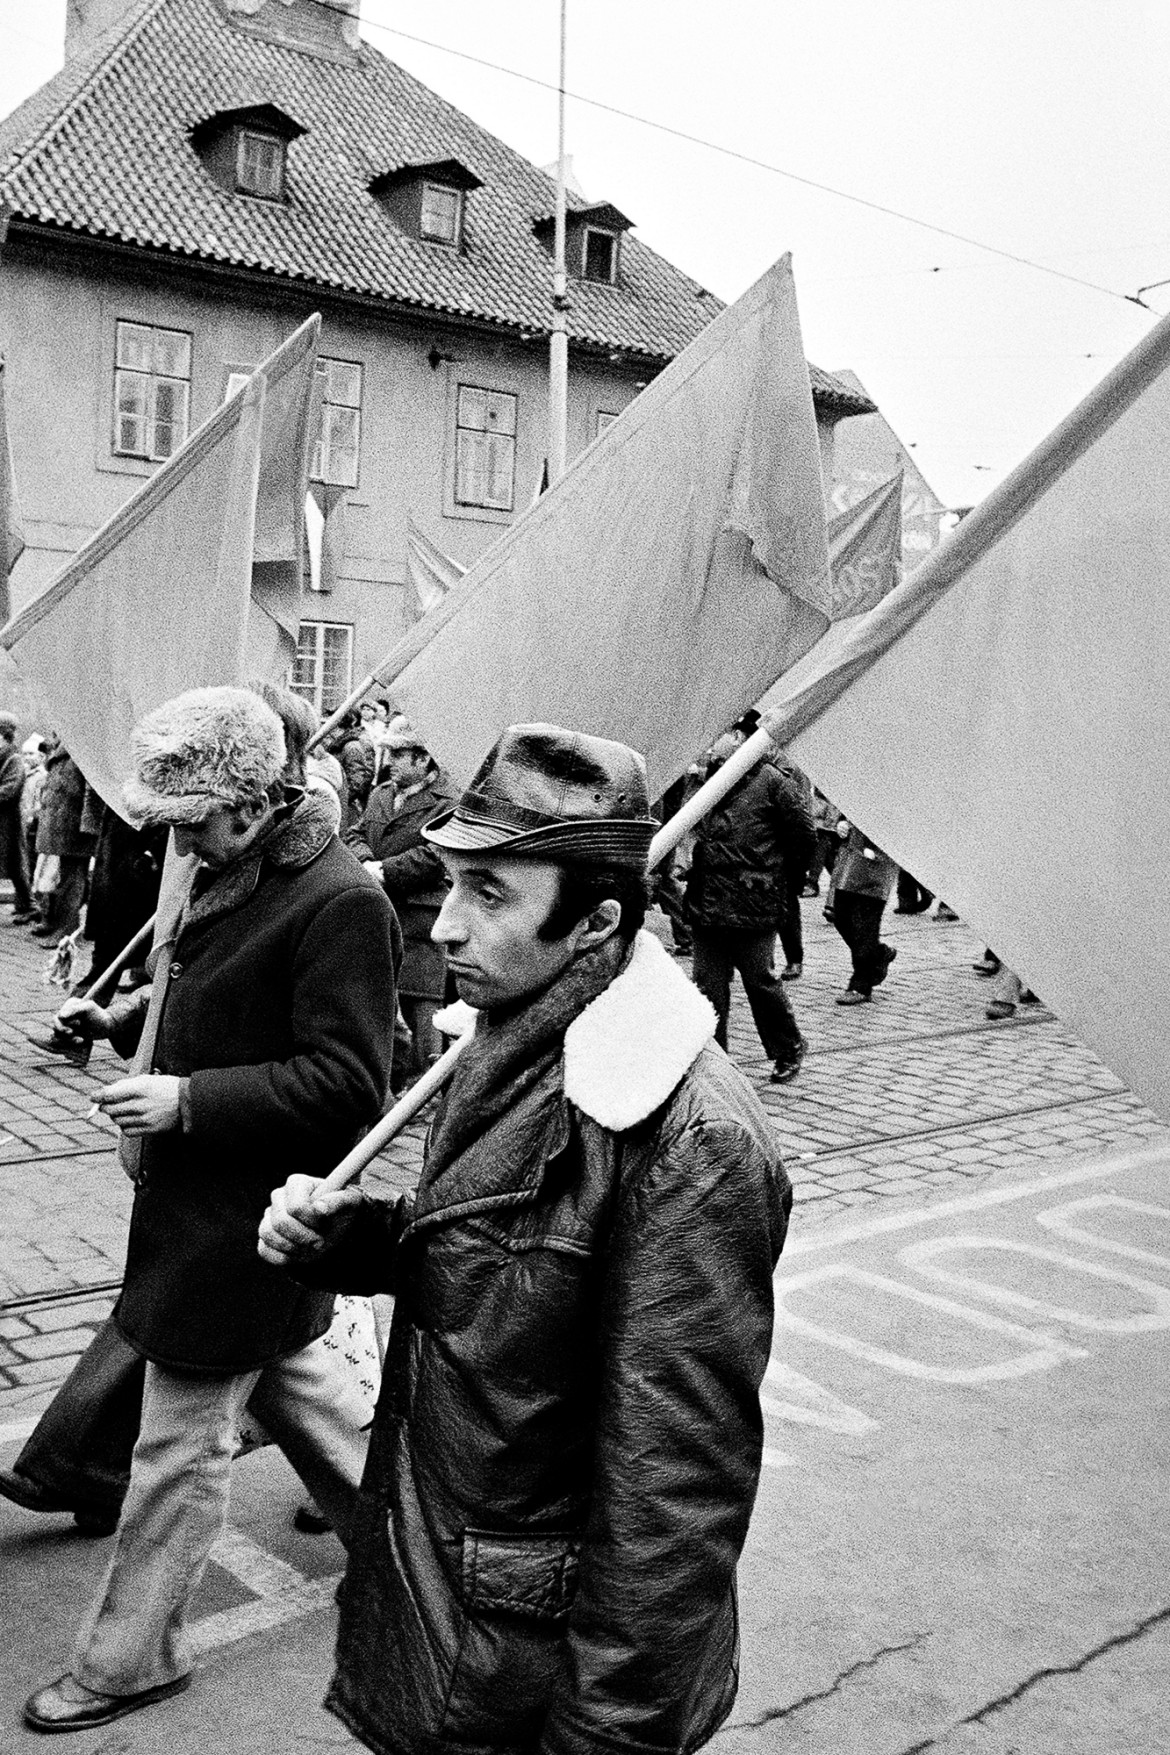 fot. Vladimír Birgus, Praga, 1978 / z wystawy "Tak wiele, tak niewiele"